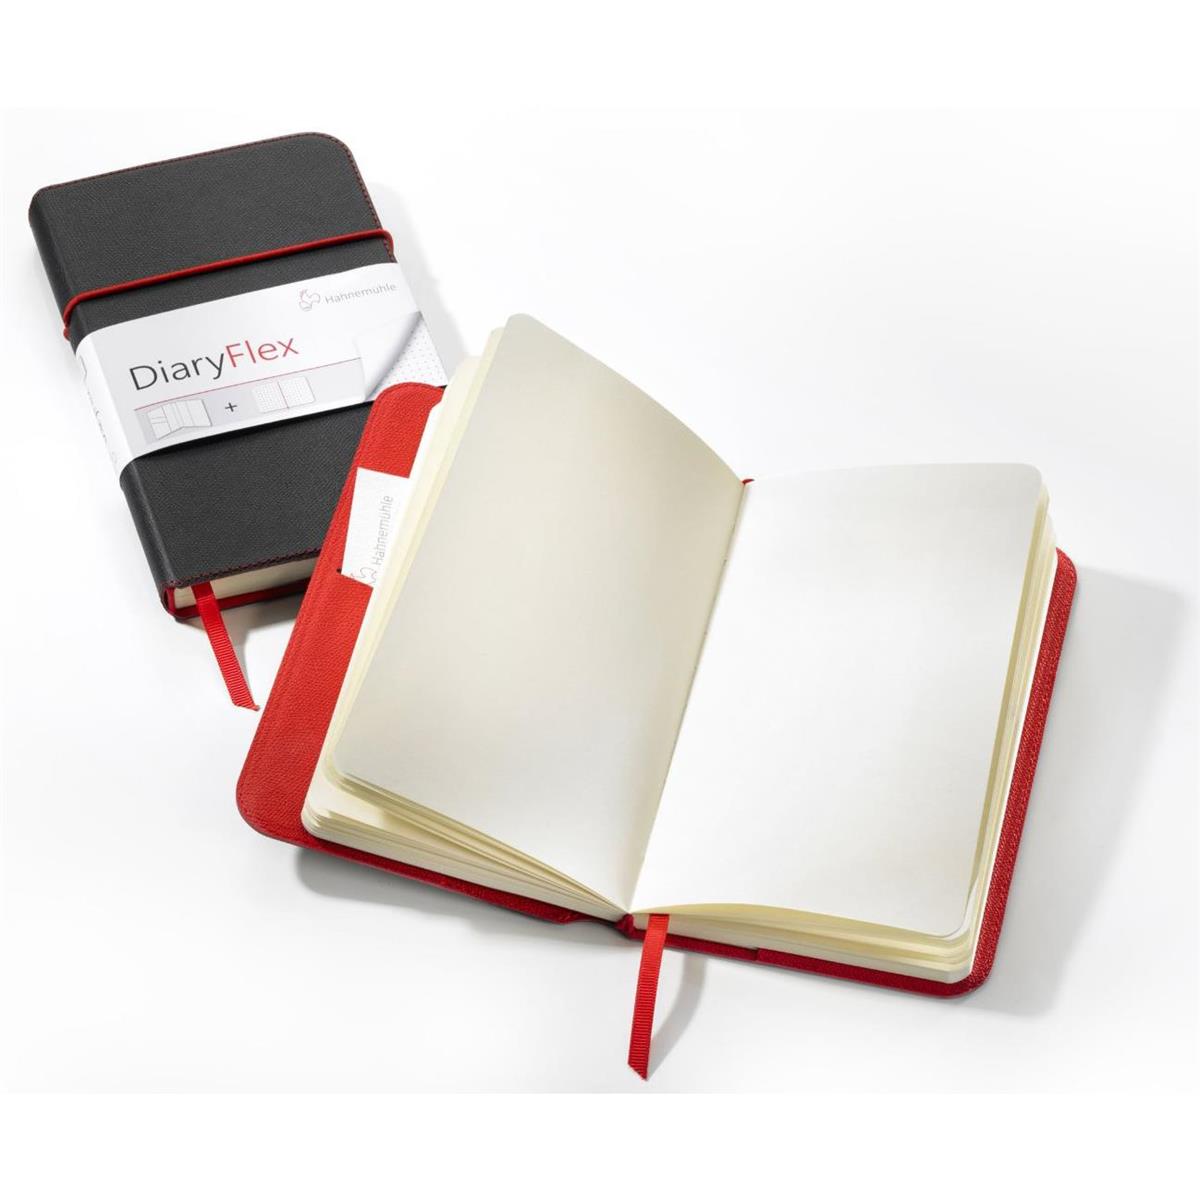 Image of Hahnemuhle DiaryFlex Notebook